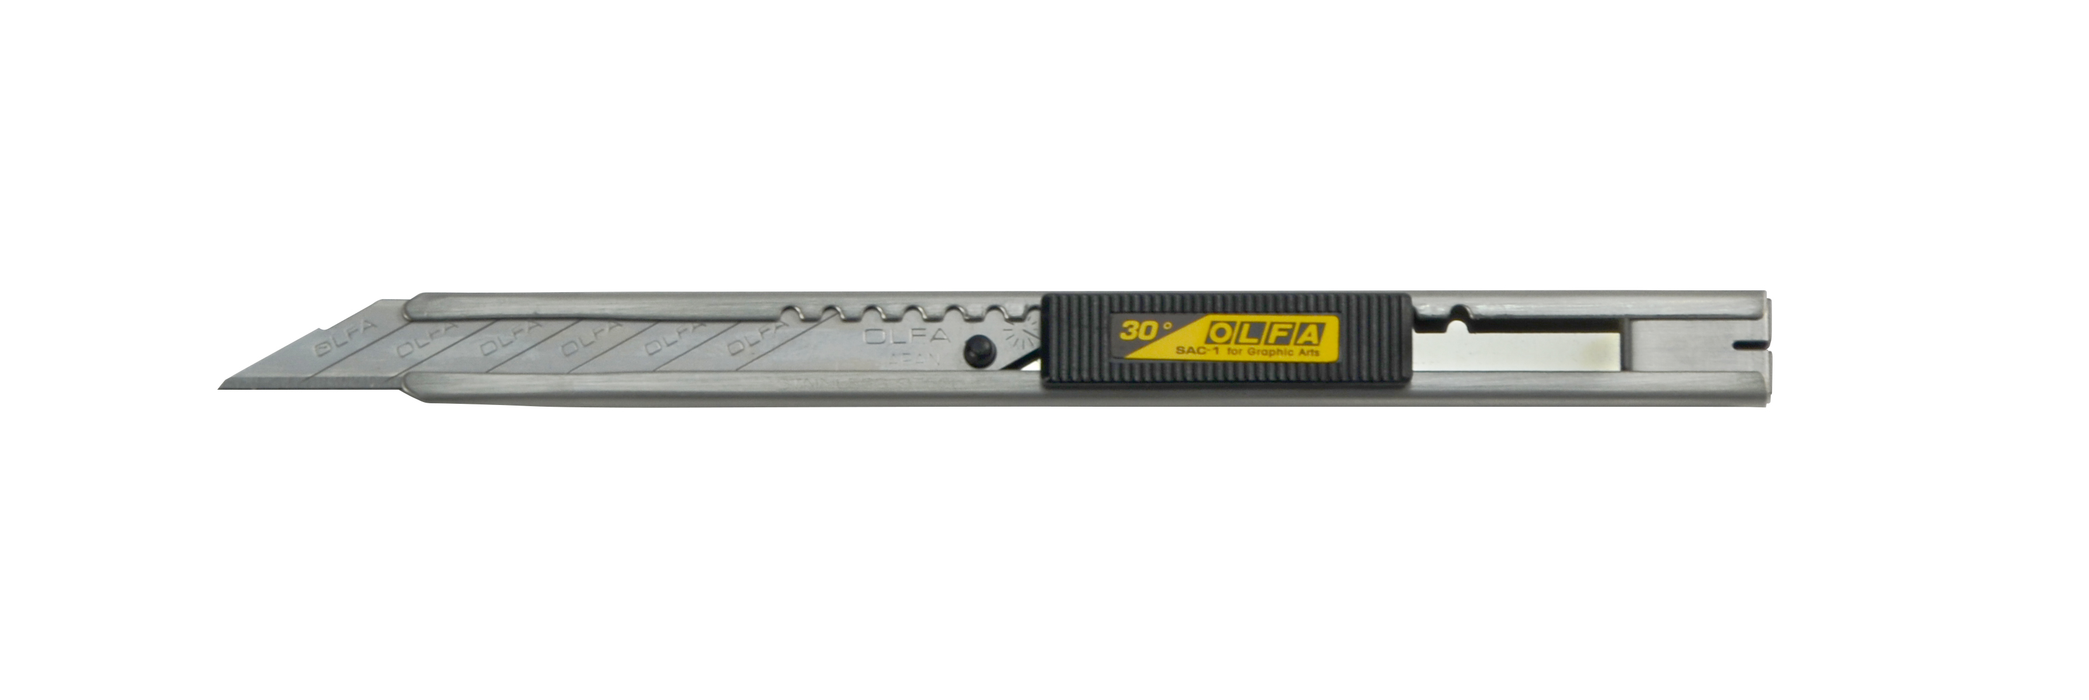 Olfa SAC-1 brytbladskniv för 9mm 30° blad